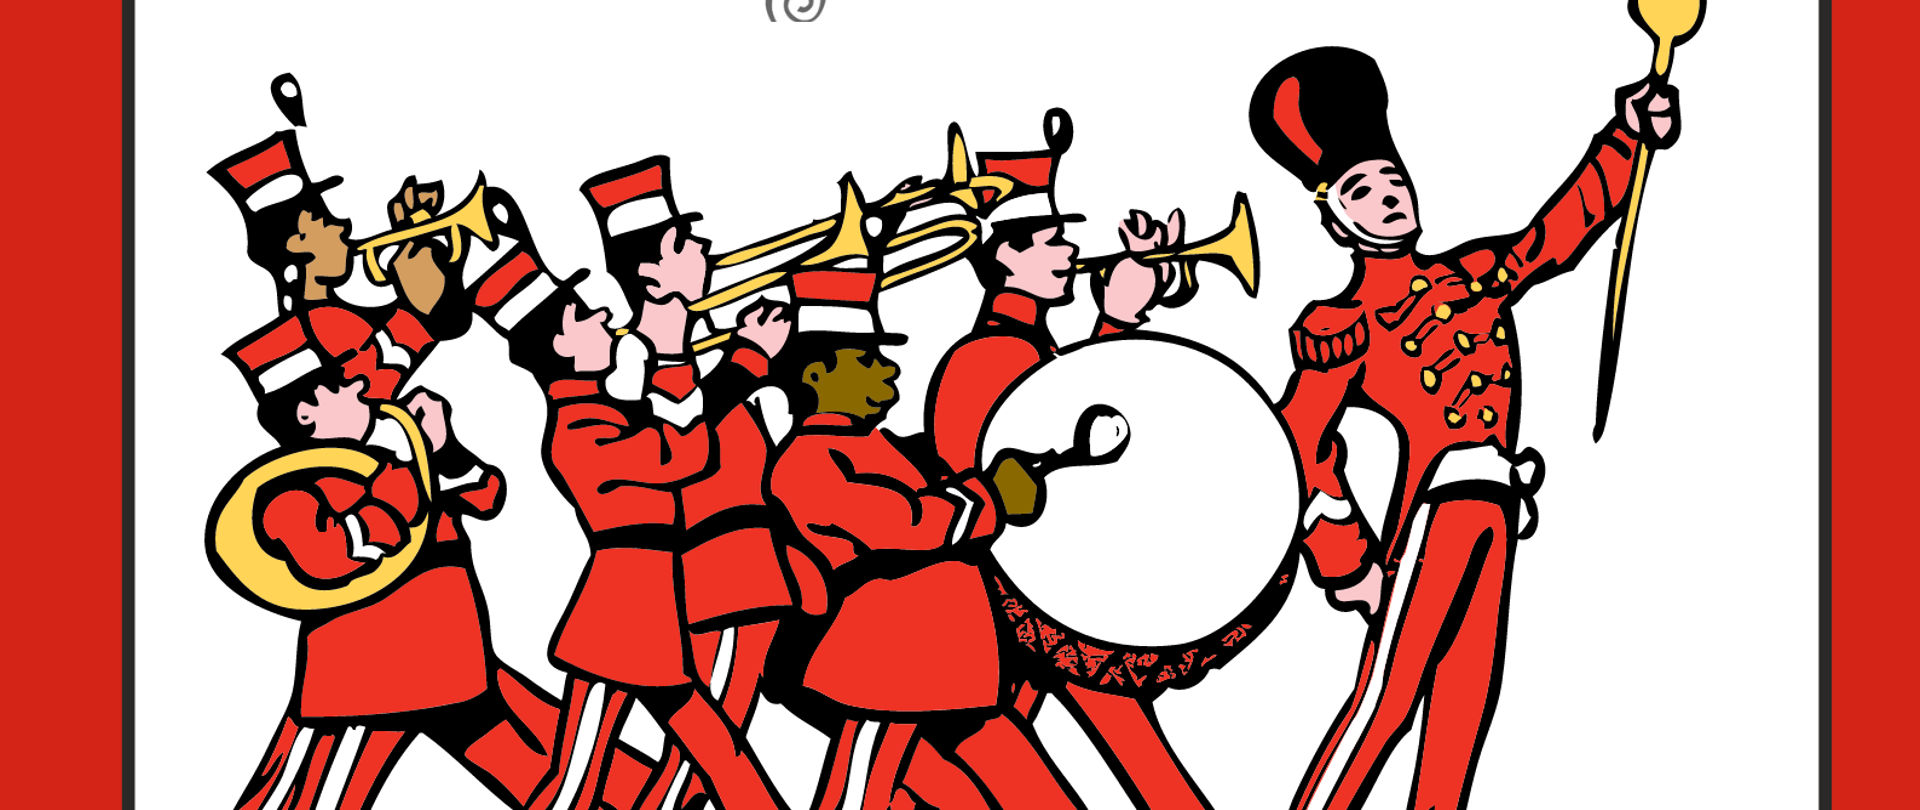 Na białym tle plakatu maszerująca w mundurach orkiestra wojskowa grająca na instrumentach, czarne napisy informujące o koncercie., wokół plakatu ramka w kolorze czerwonym. Po środku plakatu umieszczone jest logo szkoły i Miejskiego Domu Kultury.